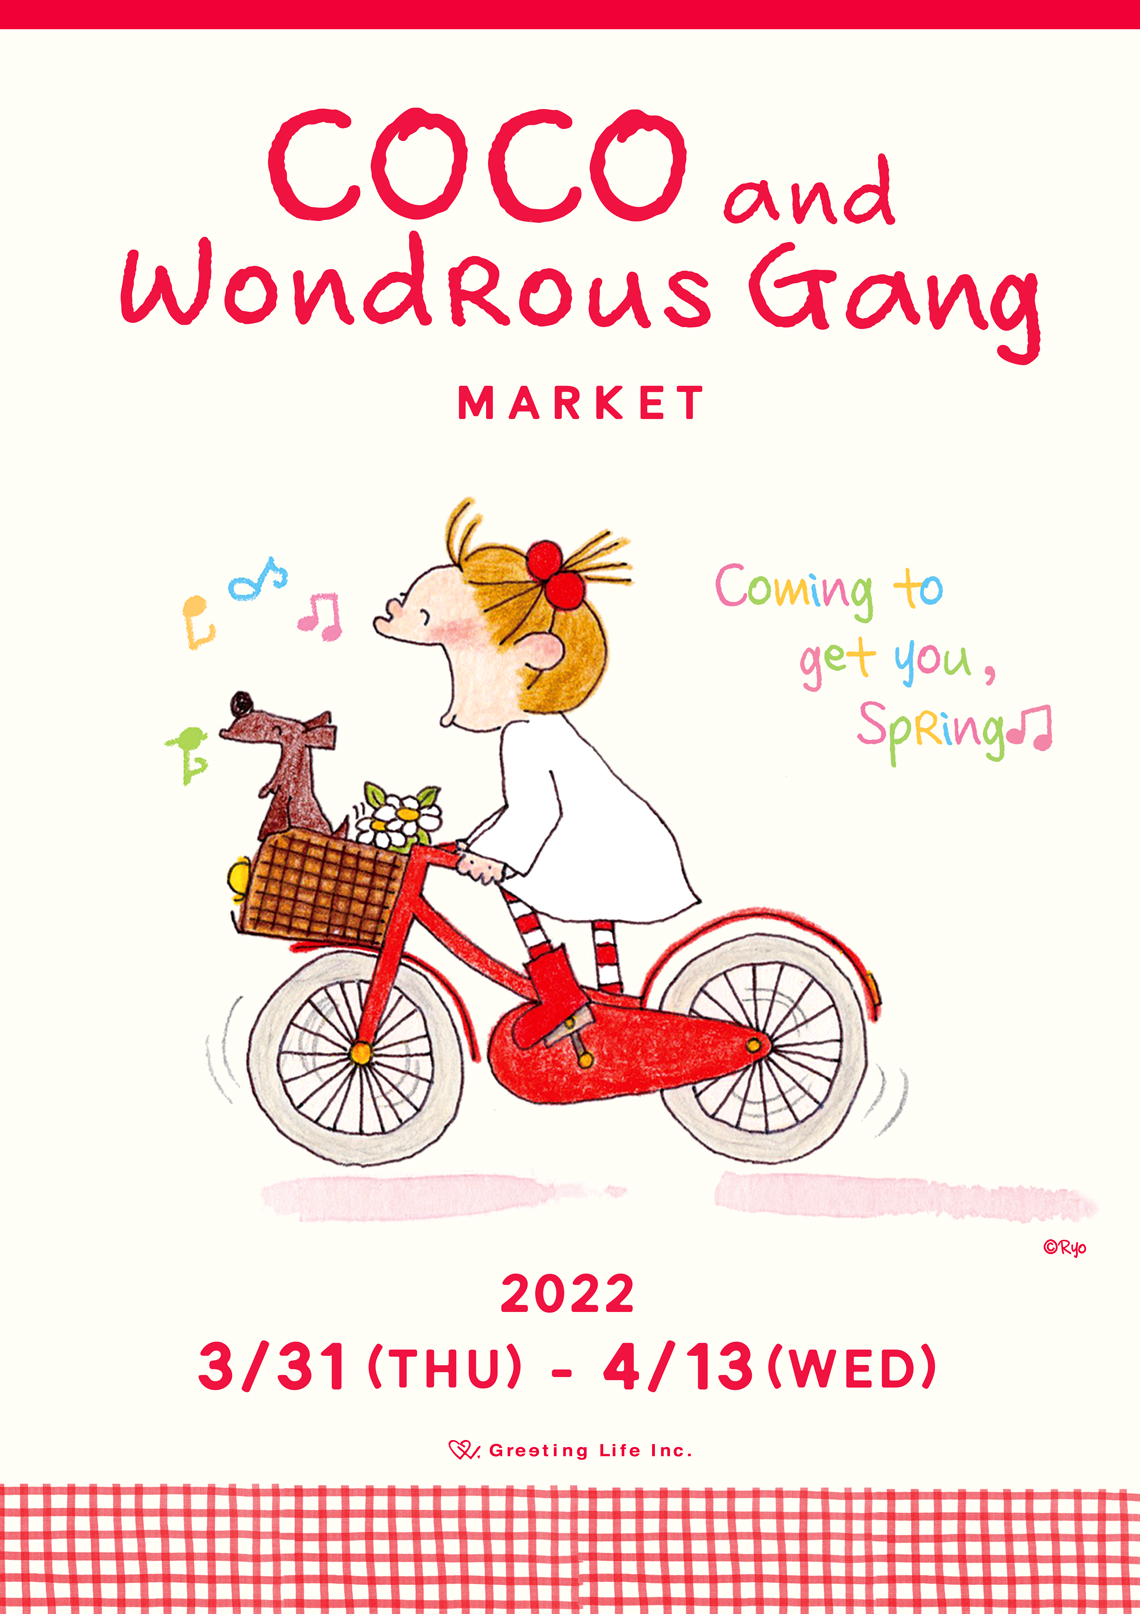 銀座 伊東屋にてcoco And Wondrous Gang Market 開催決定 グリーティングライフ